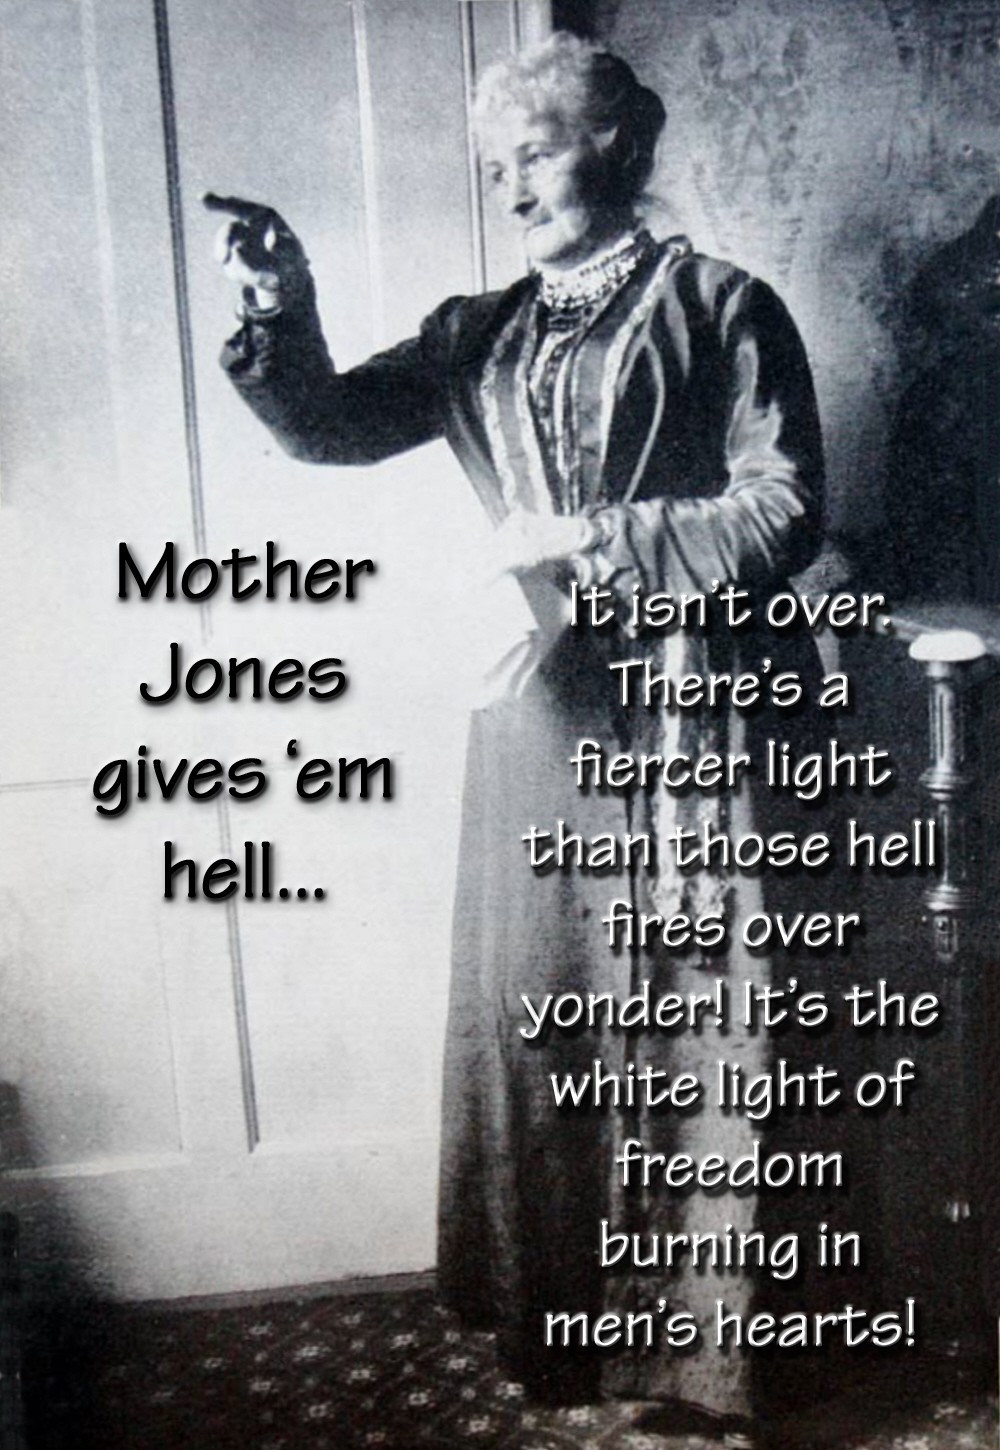 Mother Jones Quote
 00 Mother Jones Gives ’em Hell 04 12